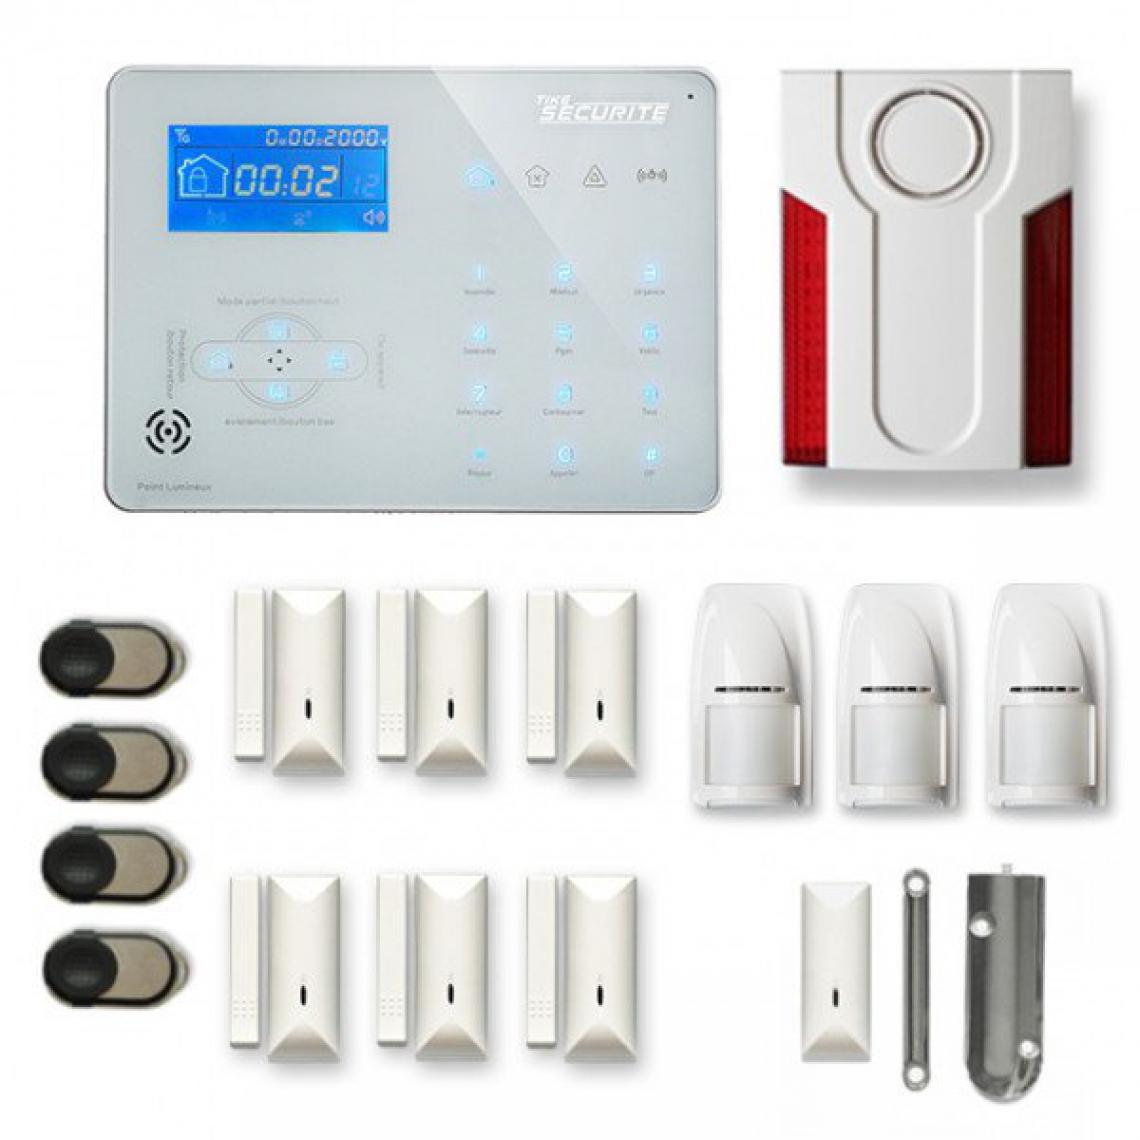 Tike Securite - Alarme maison sans fil ICE-B37 Compatible Box internet et GSM - Alarme connectée